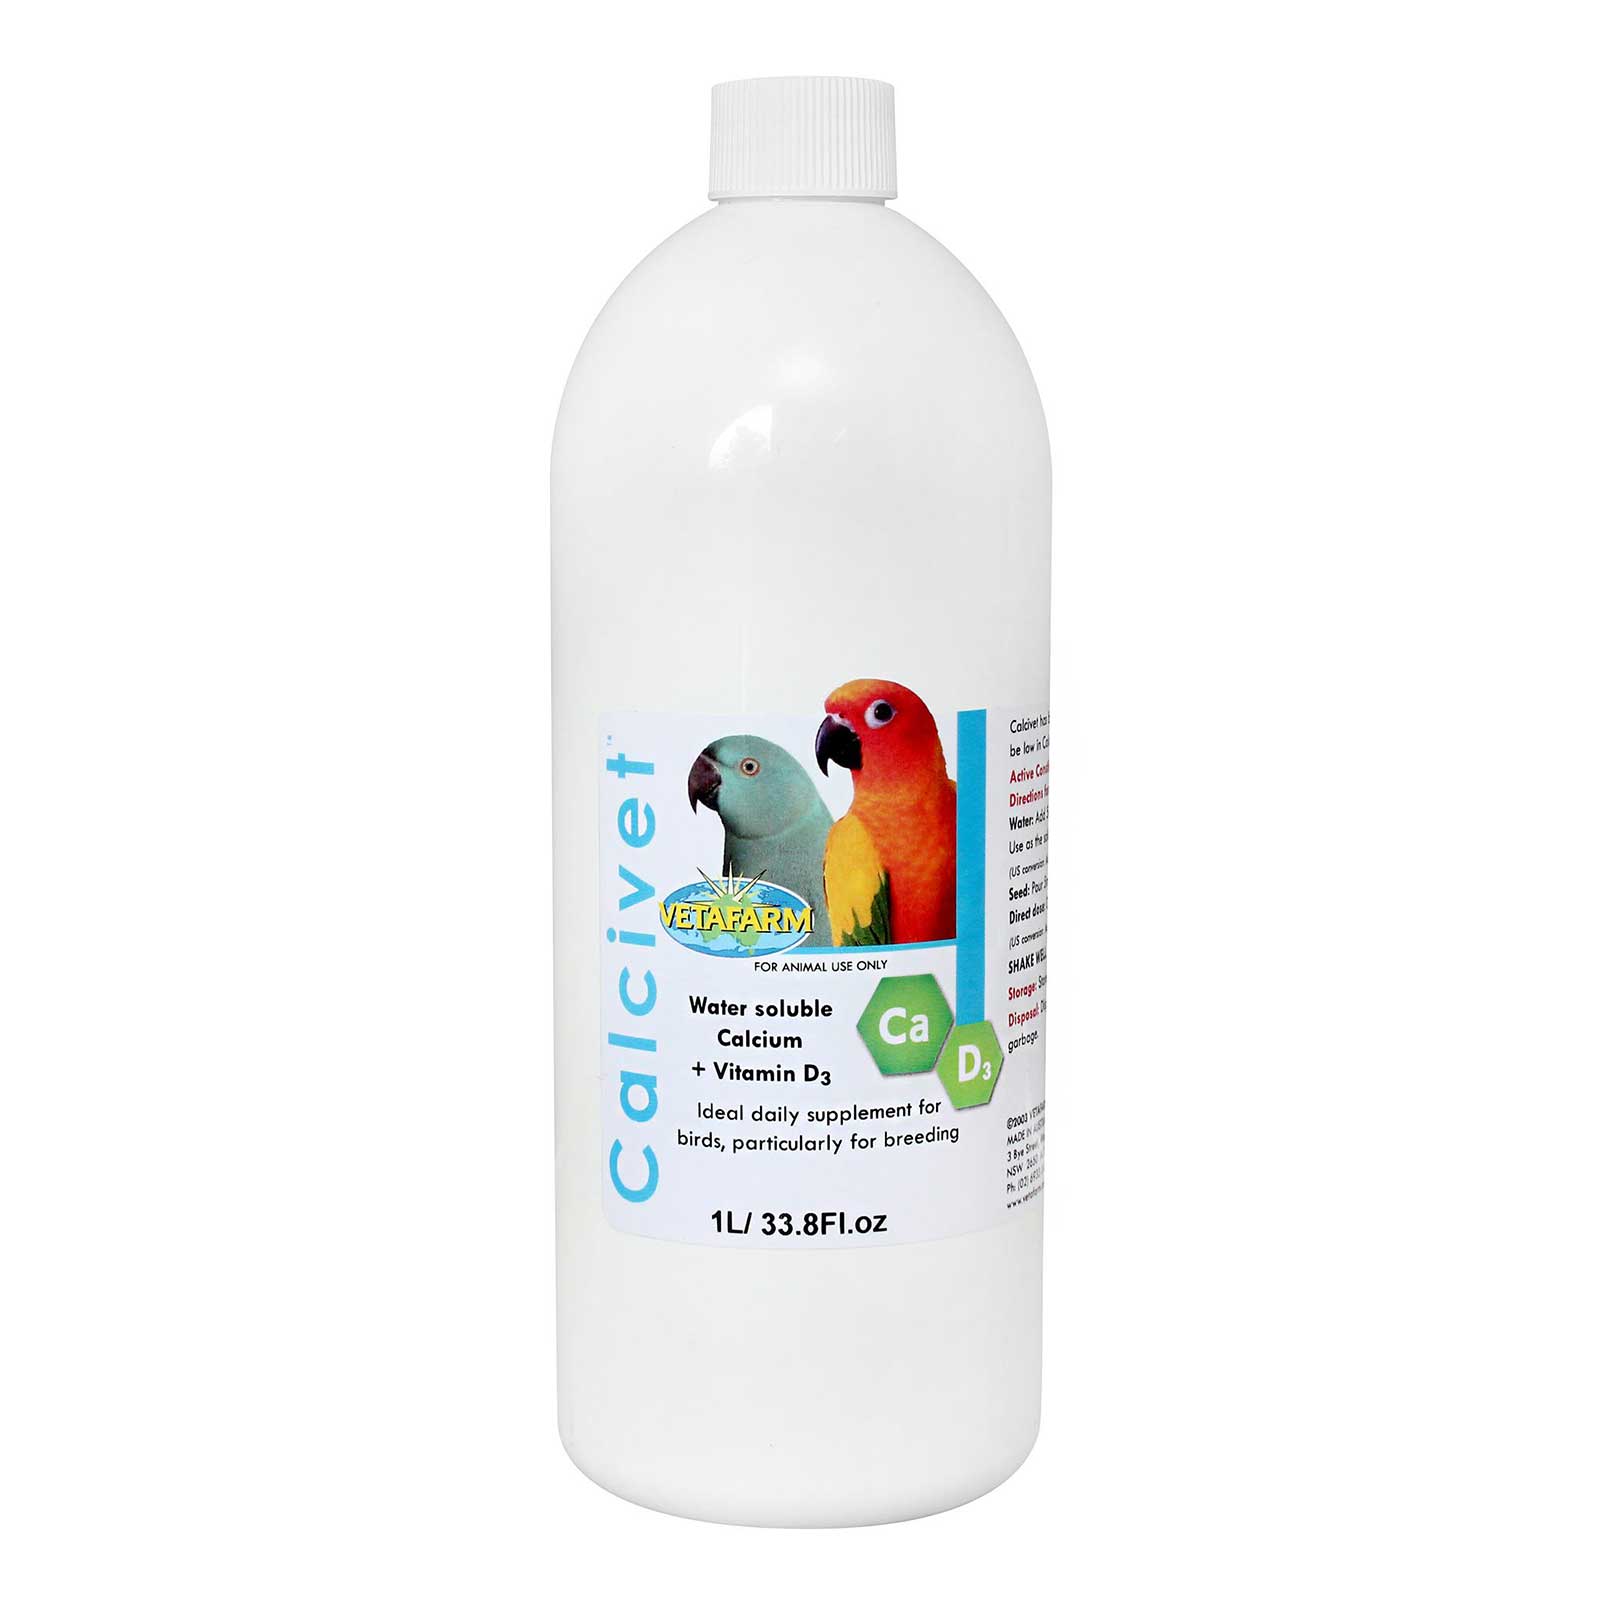 Vetafarm Calcivet Liquid Calcium Supplement